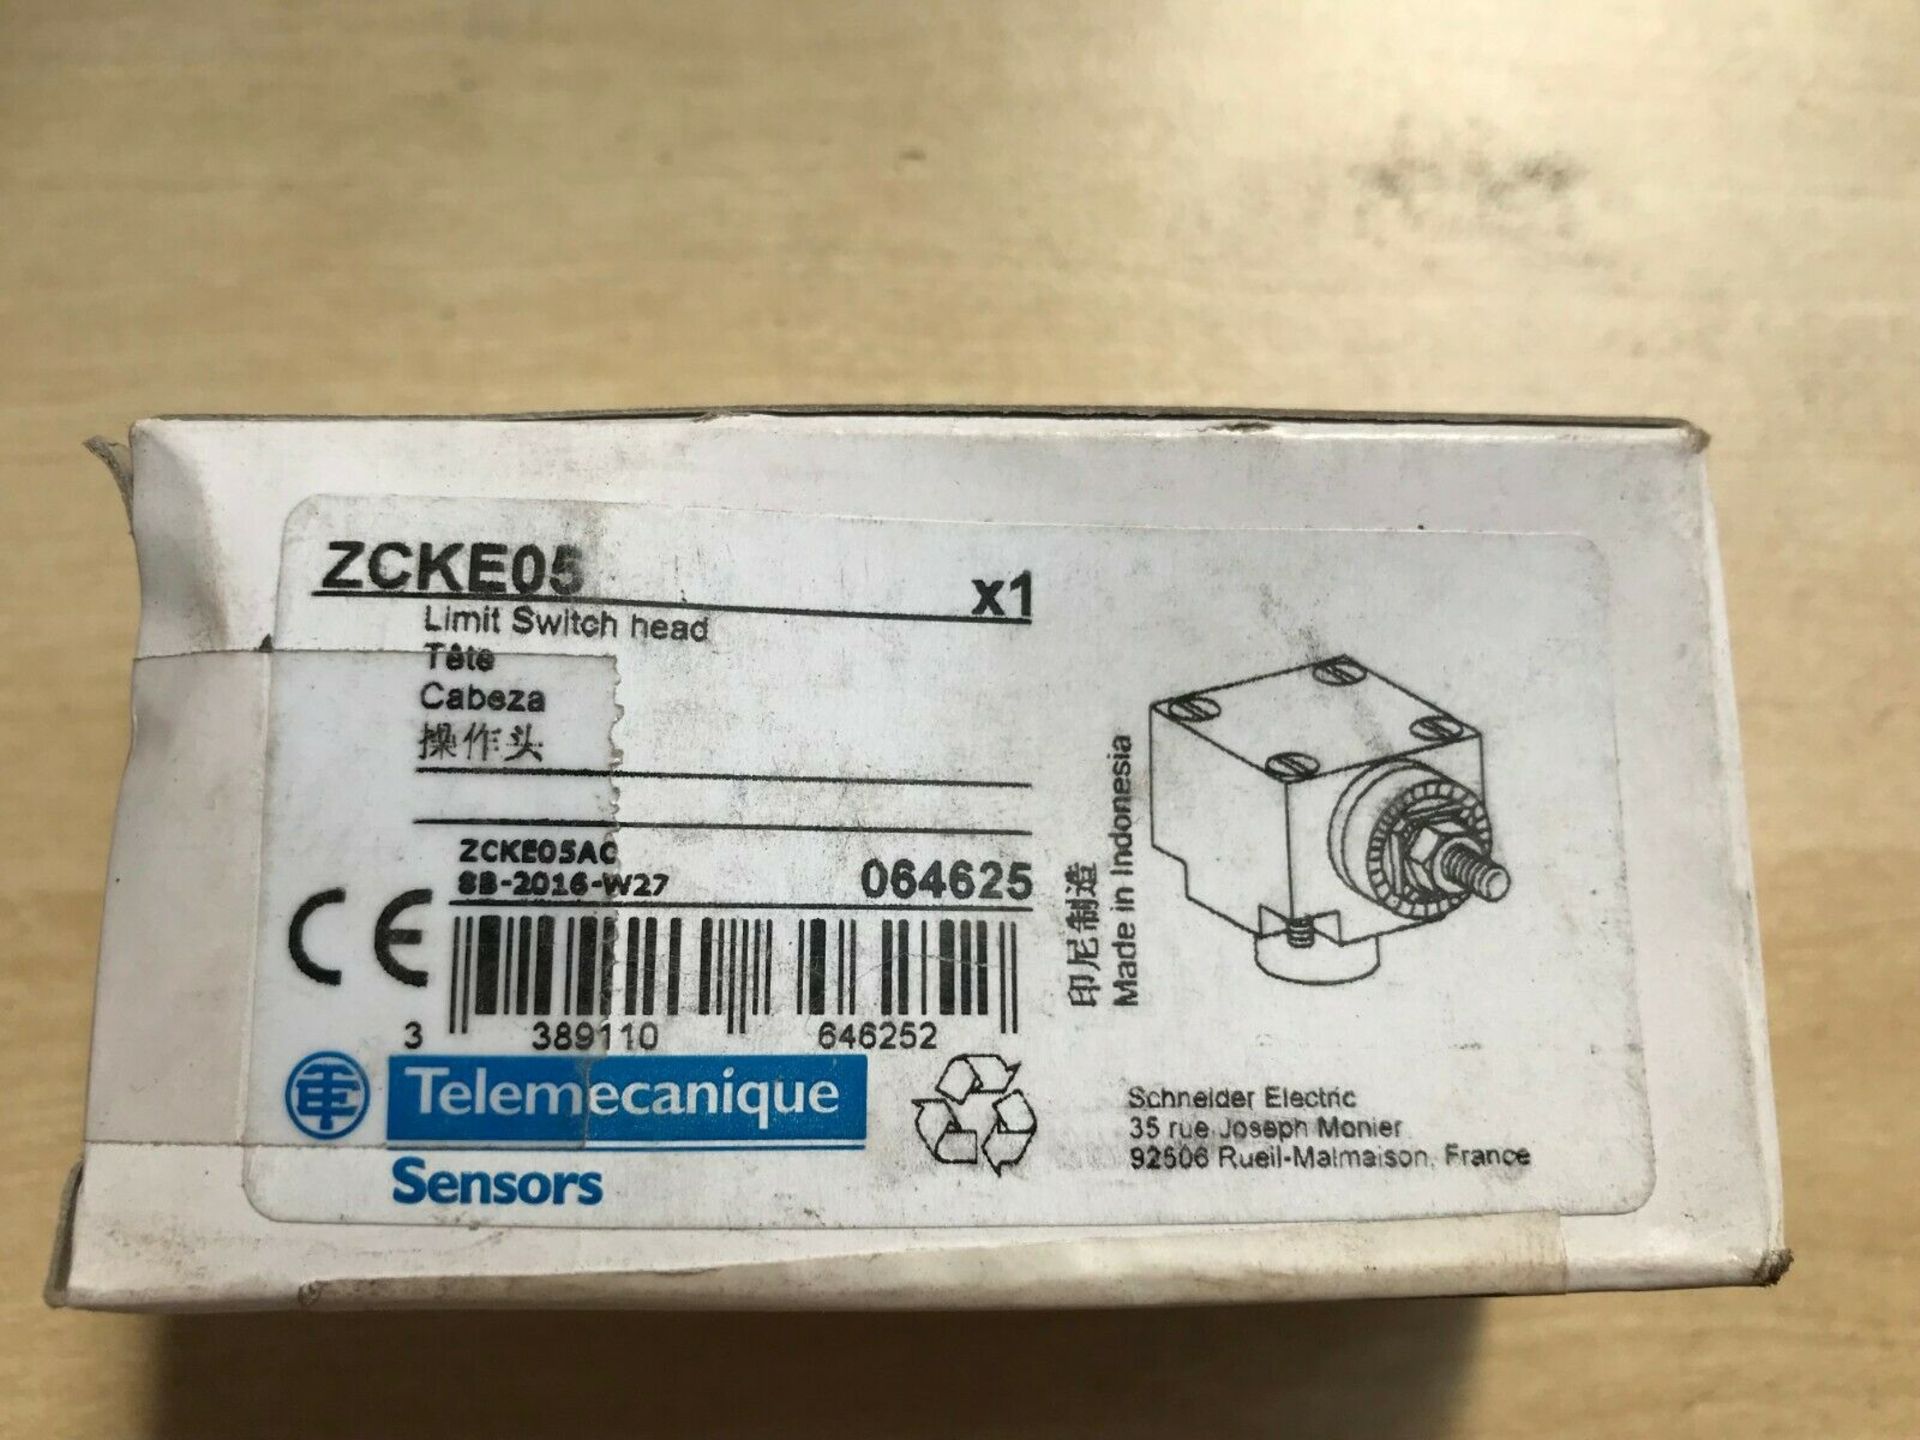 5 X ZCKE05 Telemecanique Limit Switch Head